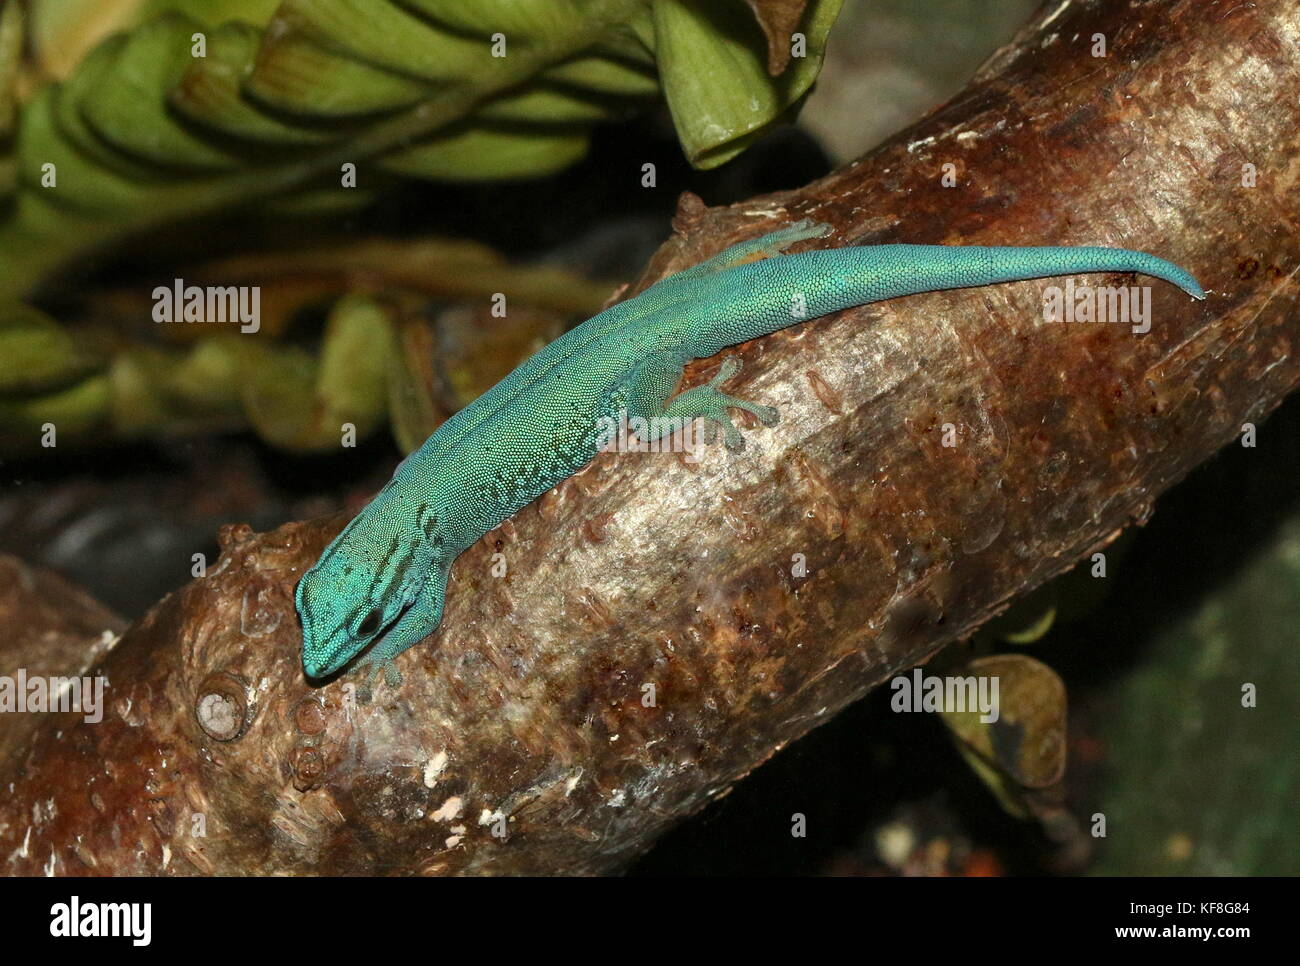 Turquesa de Tanzania Dwarf Gecko o el gecko enano de William (Lygodactylus williamsi), también Gecko azul eléctrico Foto de stock